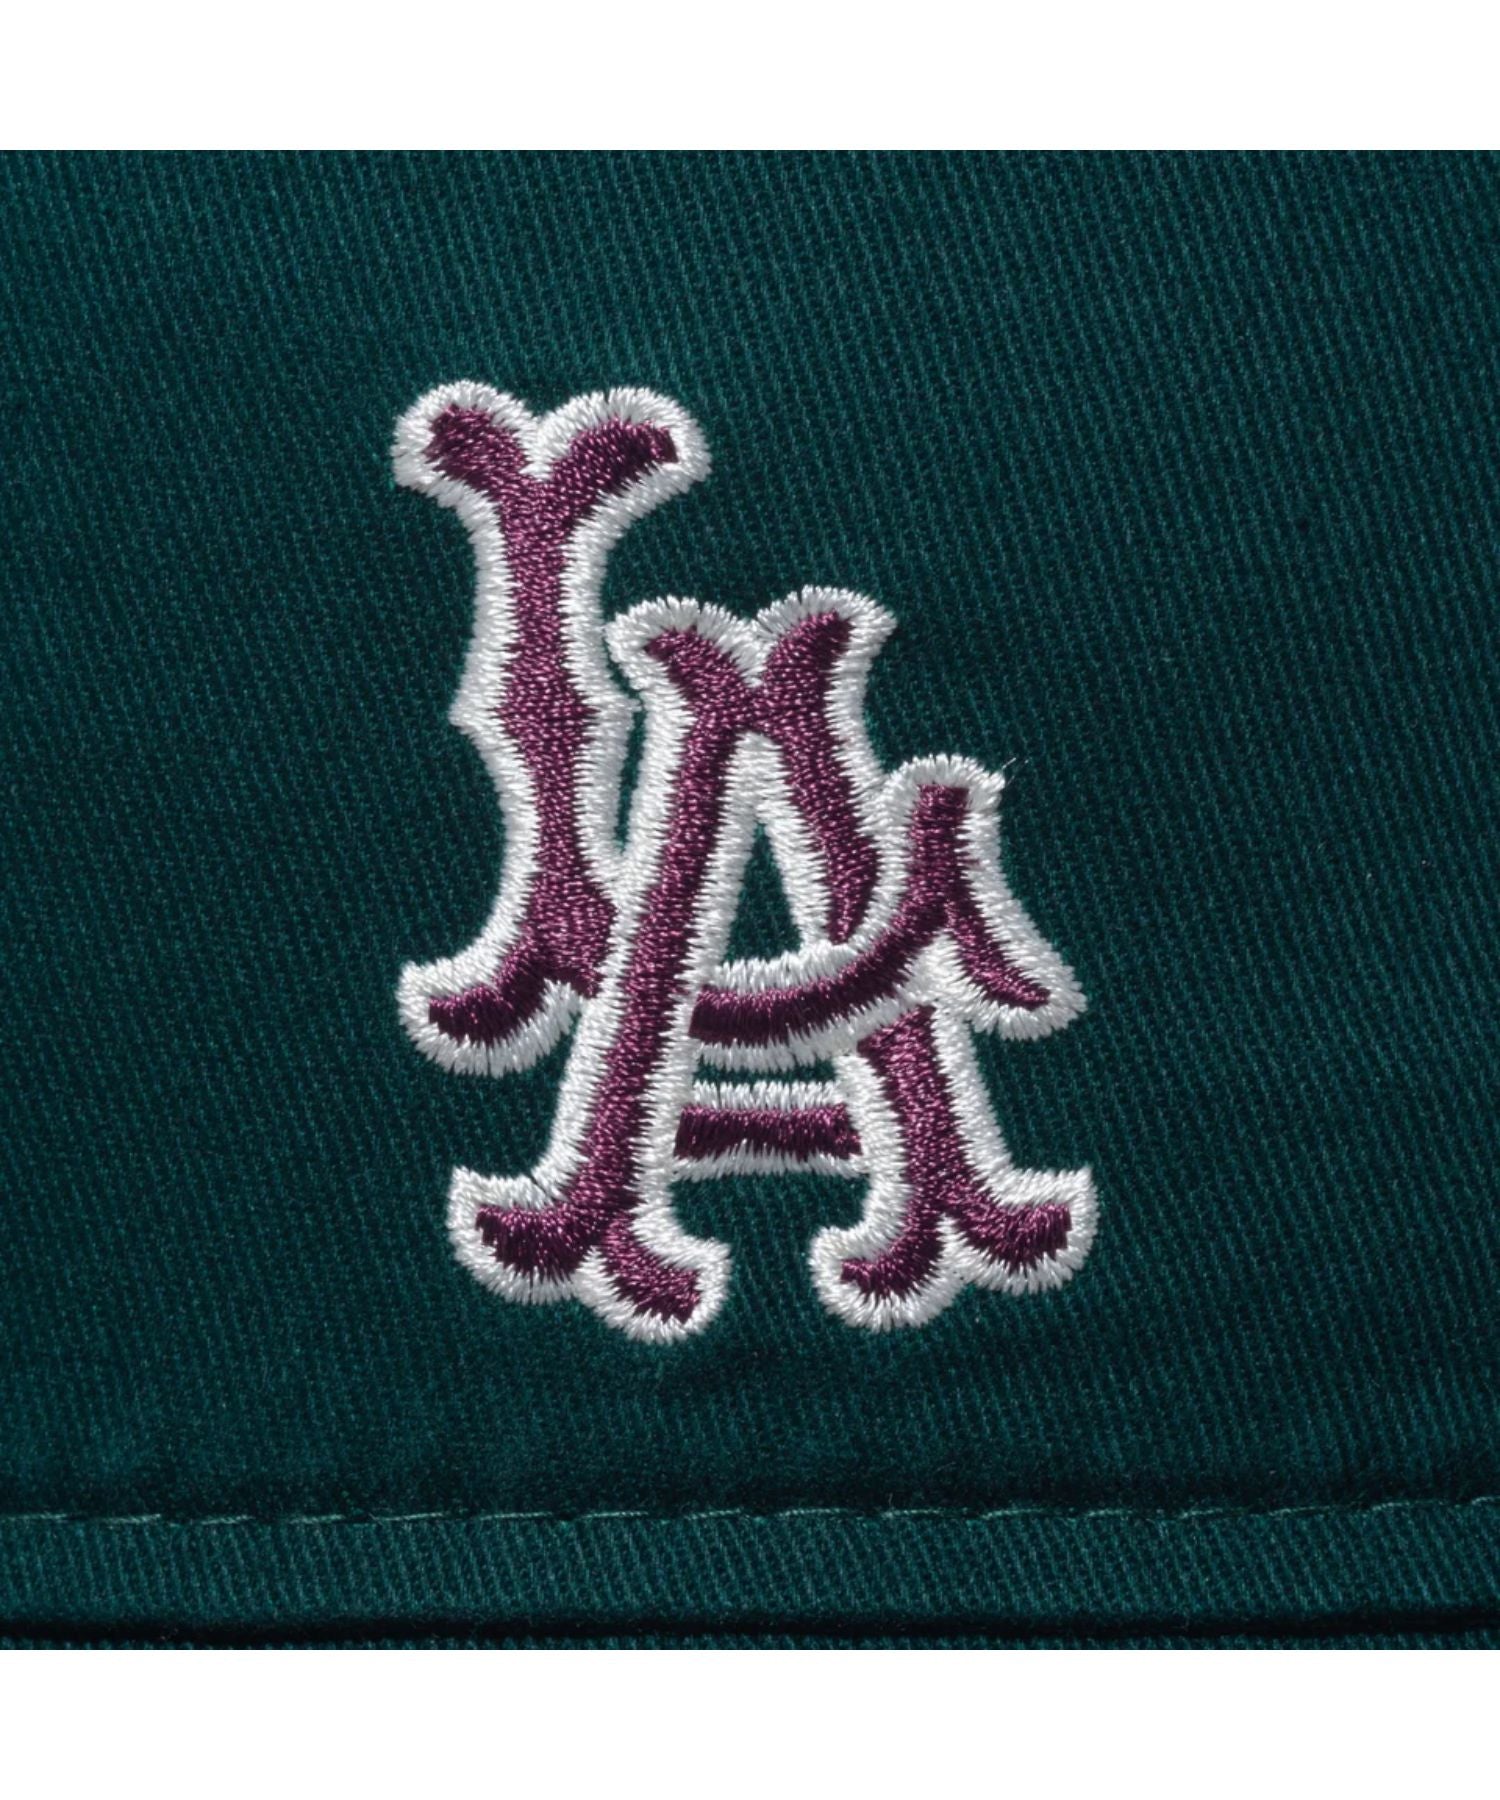 Bucket01 Los Angeles Dodgers Cooperstown